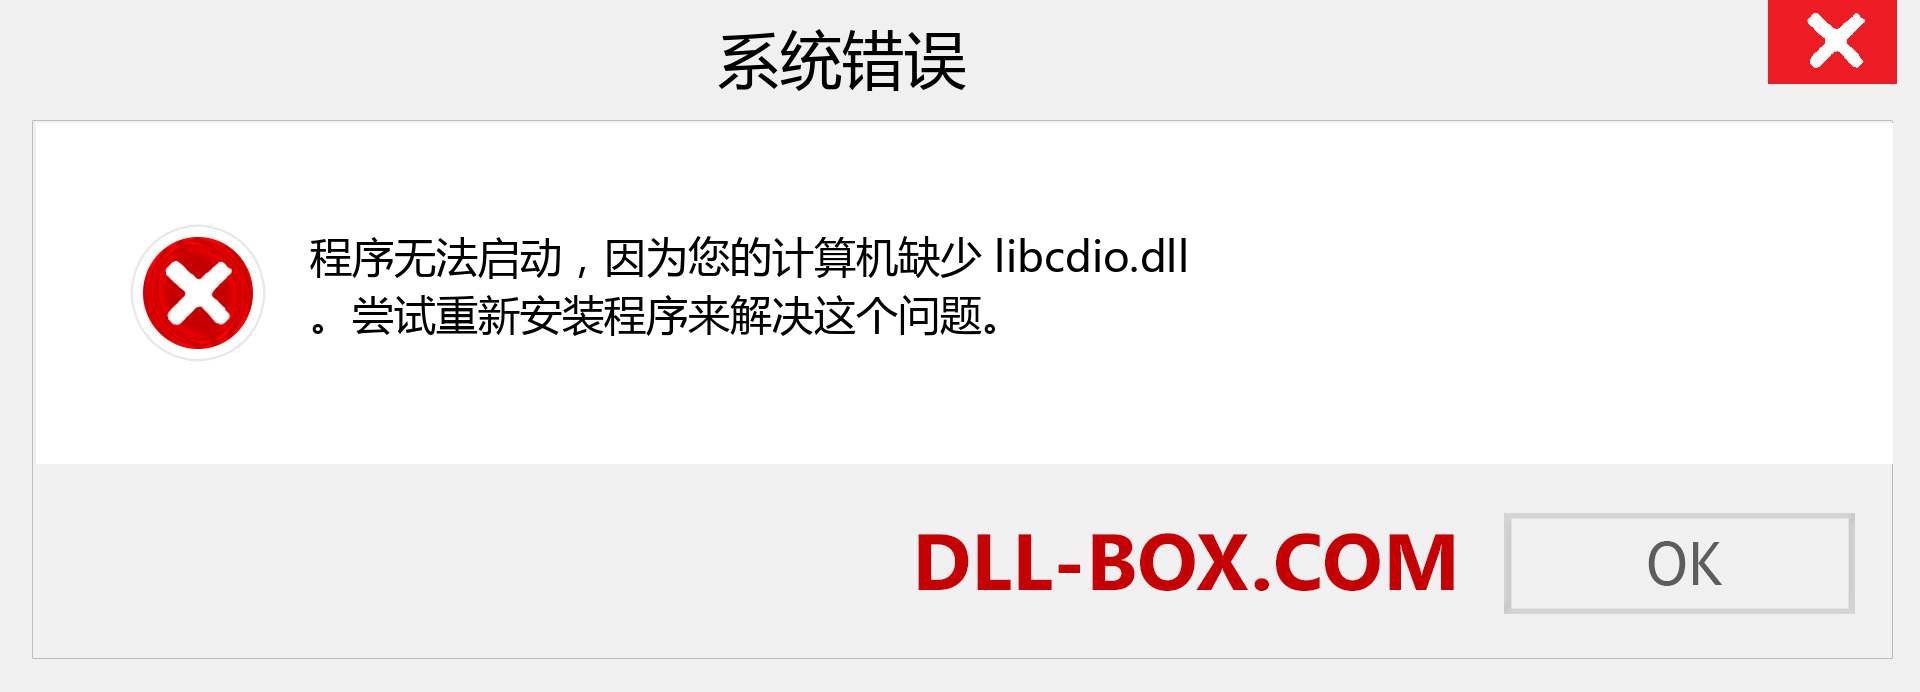 libcdio.dll 文件丢失？。 适用于 Windows 7、8、10 的下载 - 修复 Windows、照片、图像上的 libcdio dll 丢失错误